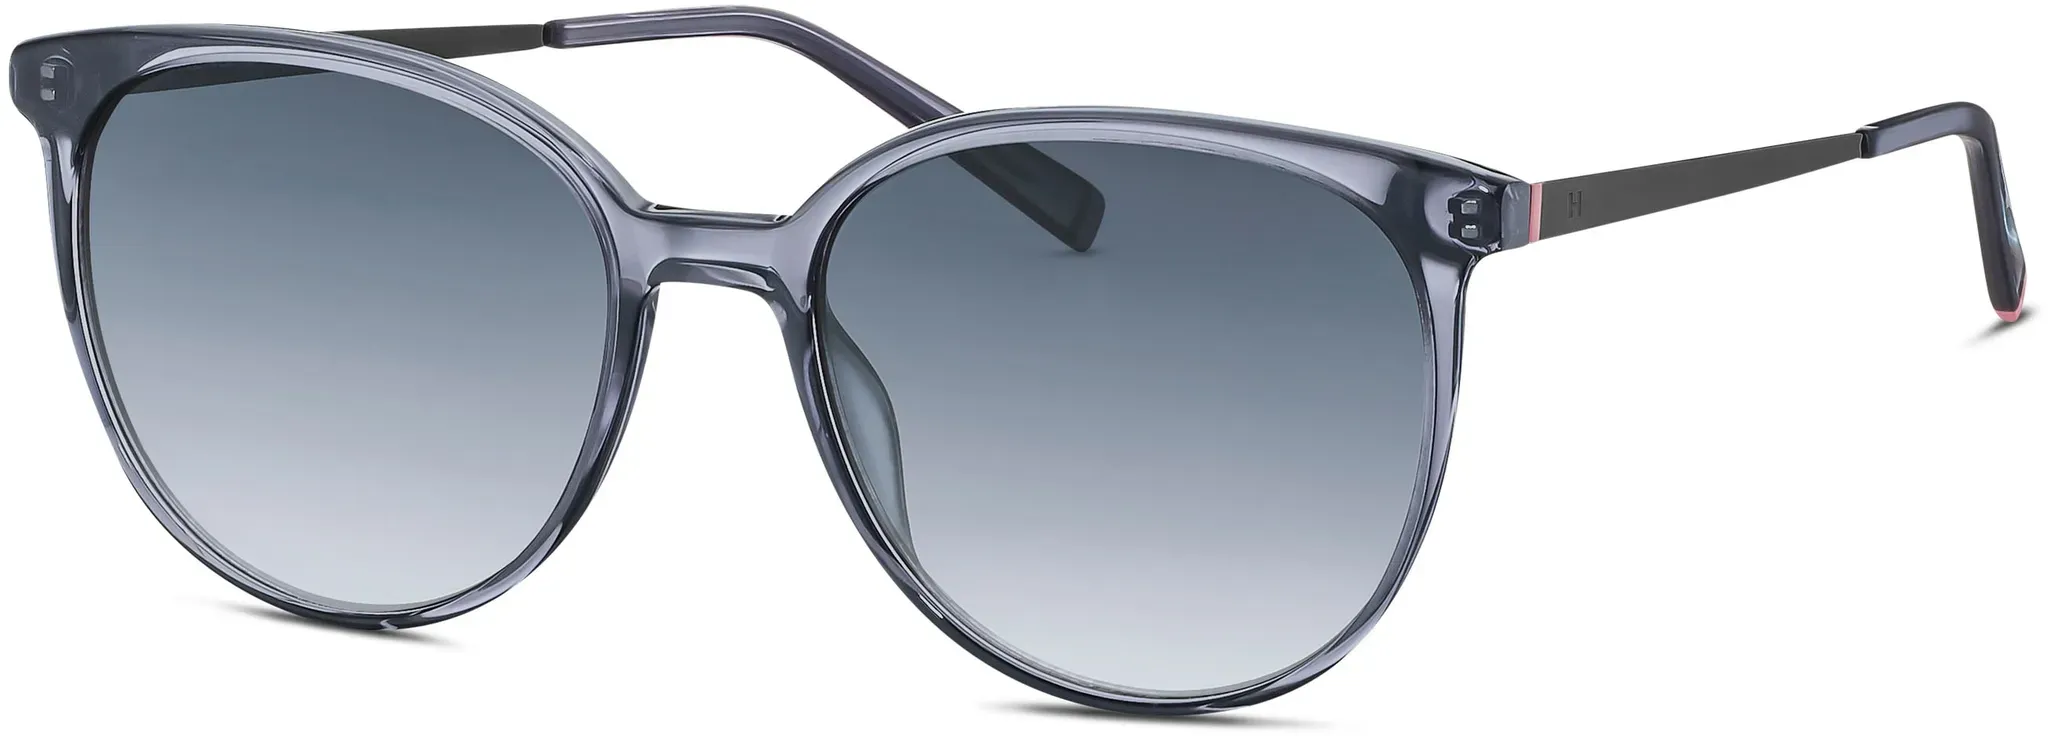 Sonnenbrille HUMPHREY ́S EYEWEAR grau Damen Brillen Accessoires mit leichter Verlaufstönung